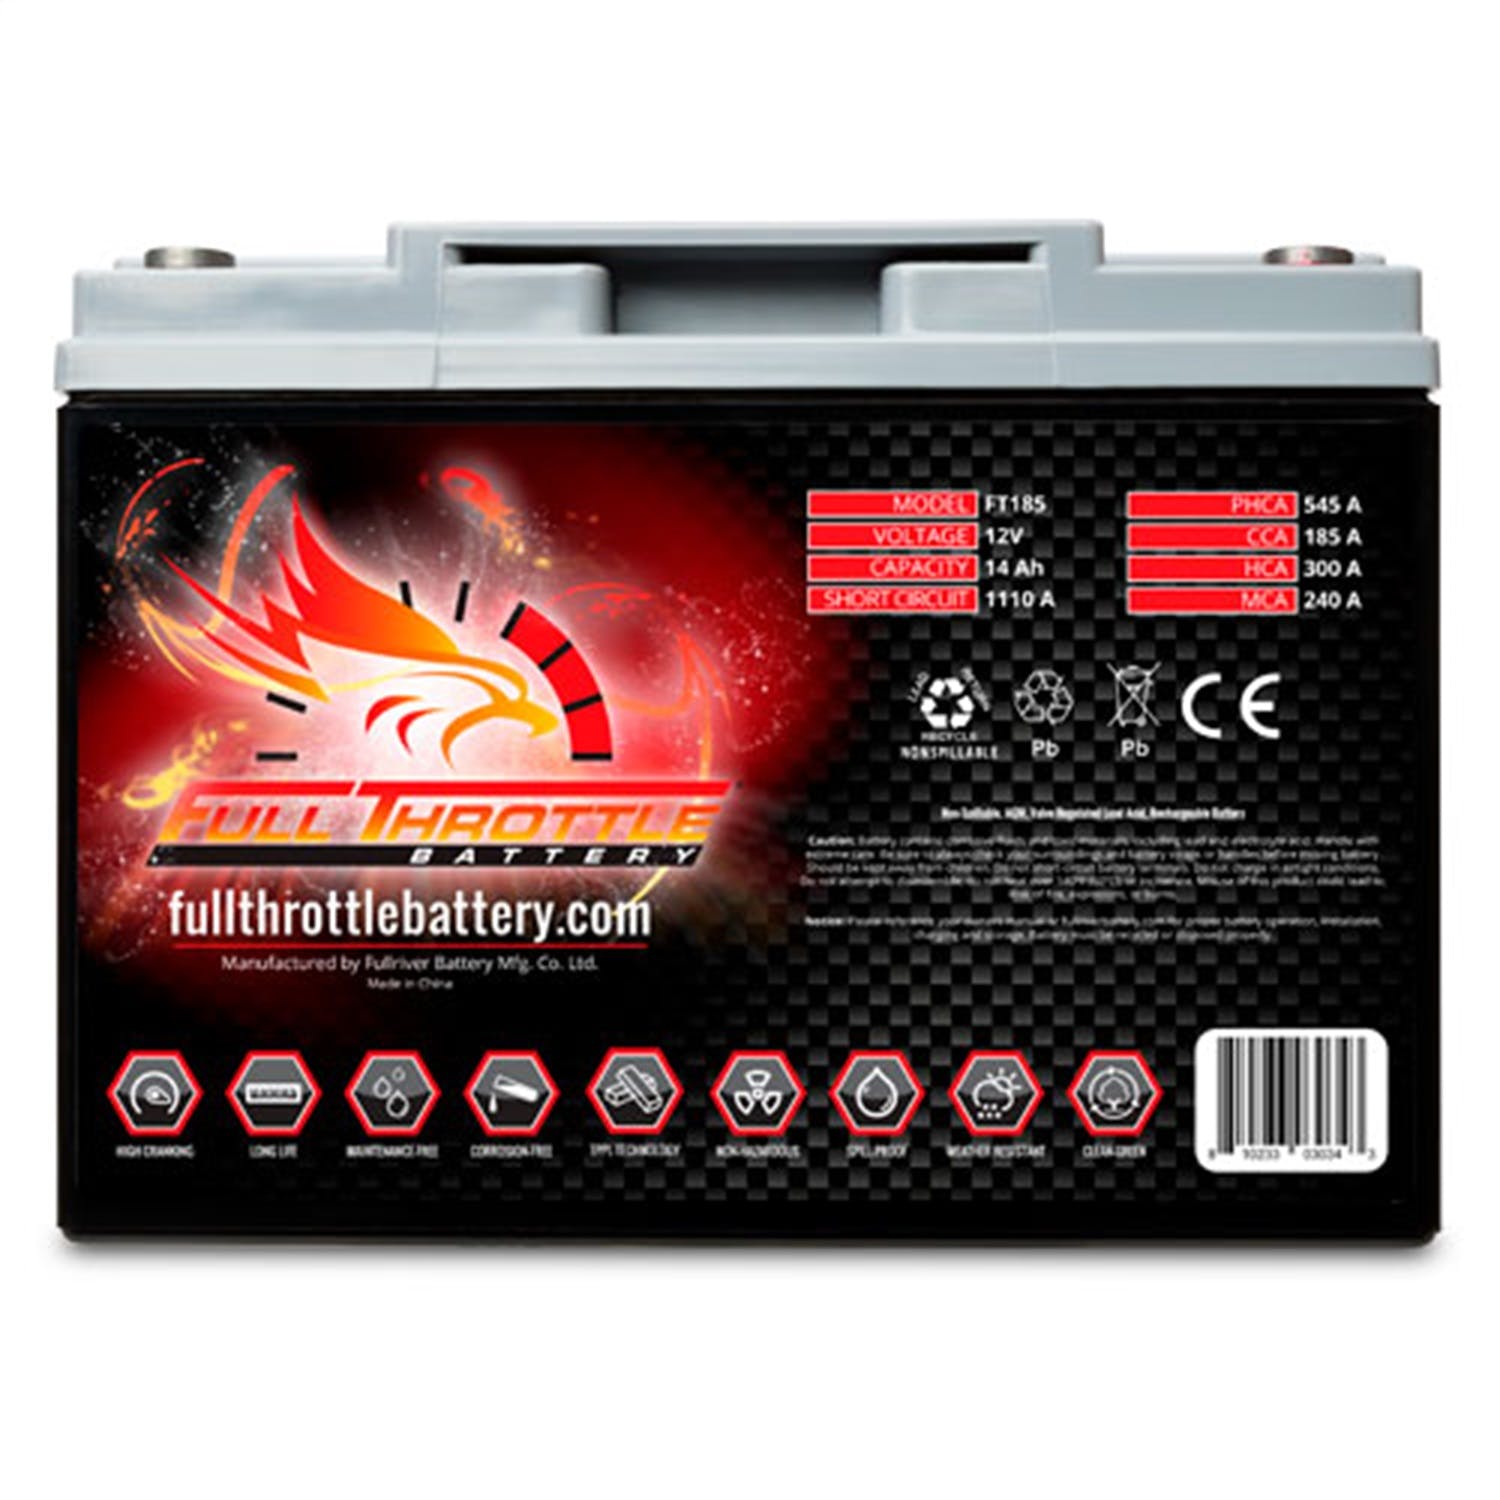 Fullriver Battery FT185 Full Throttle 12V Power Sports Battery